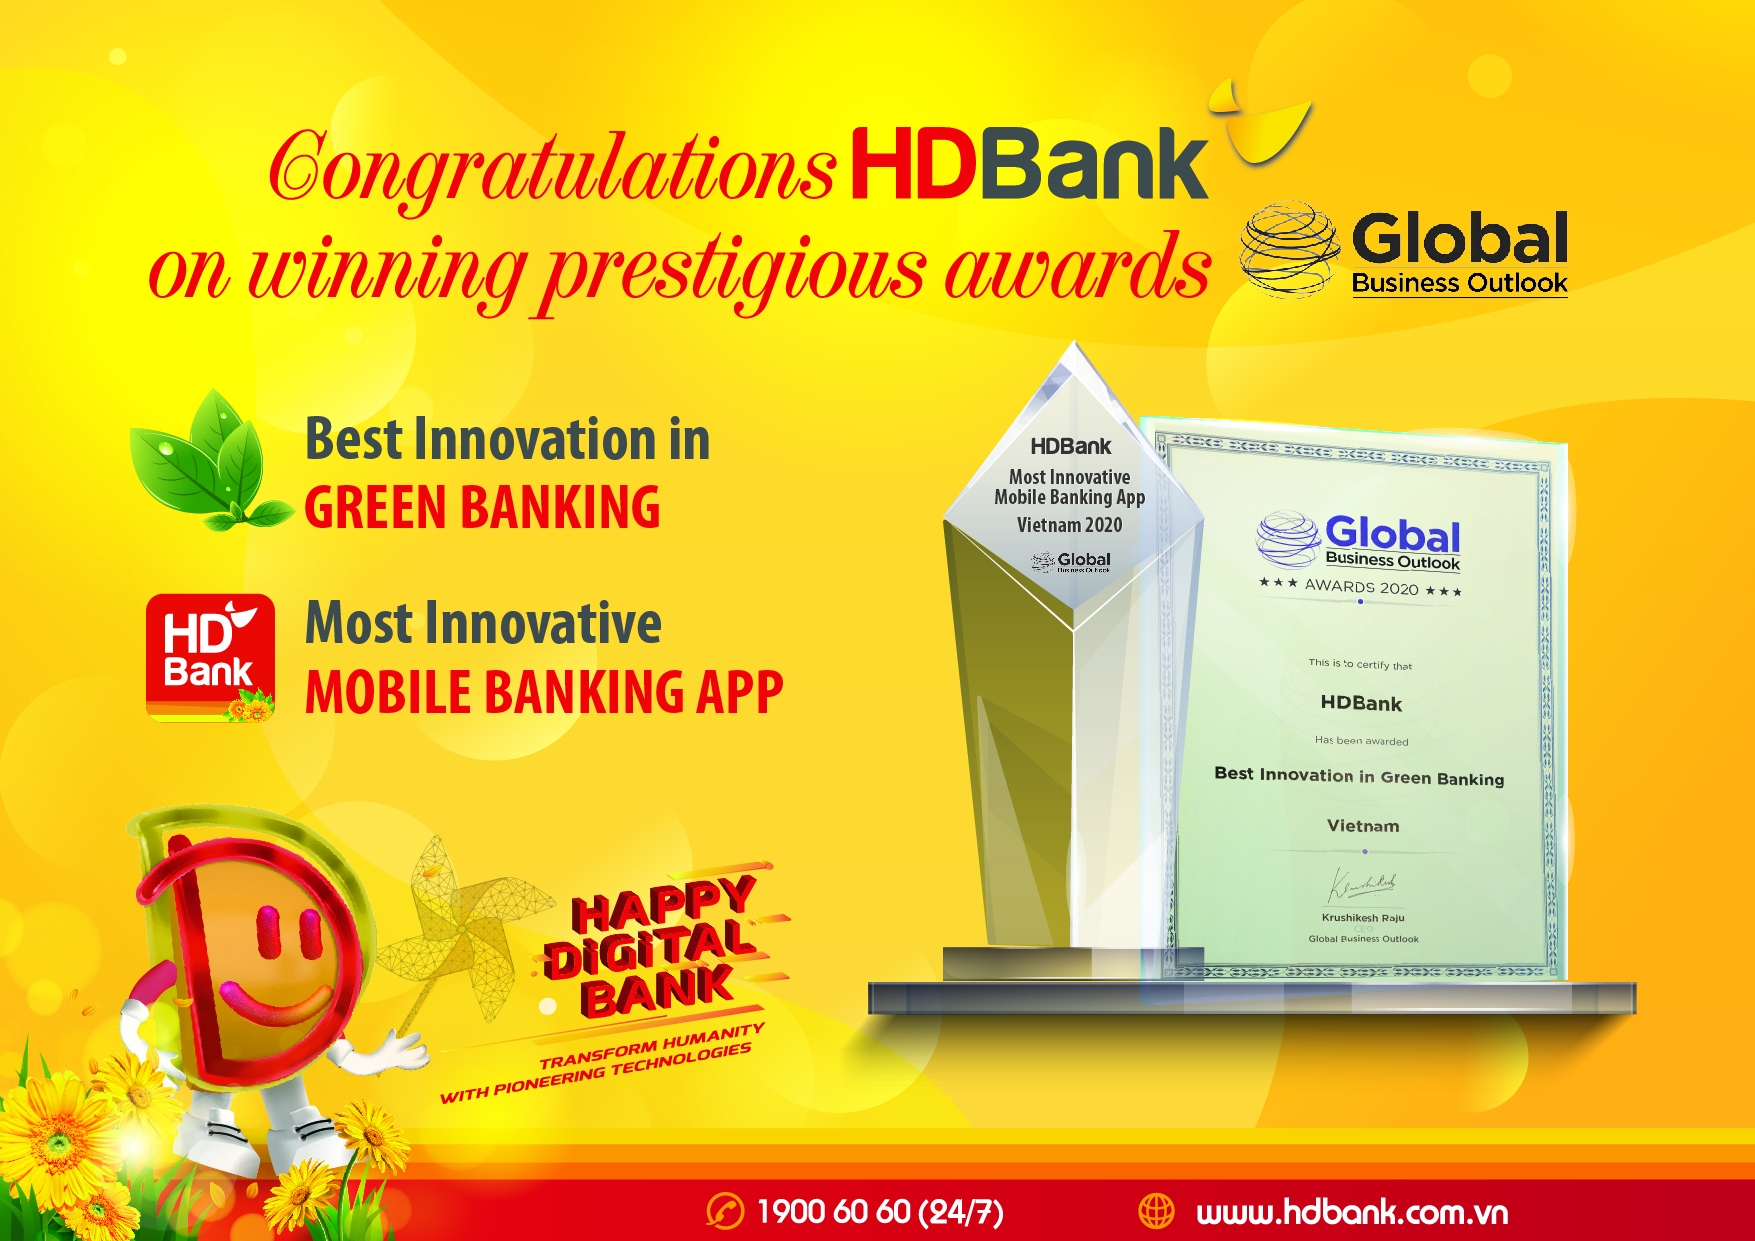 HDBank receives Global Business Outlook Award 2020